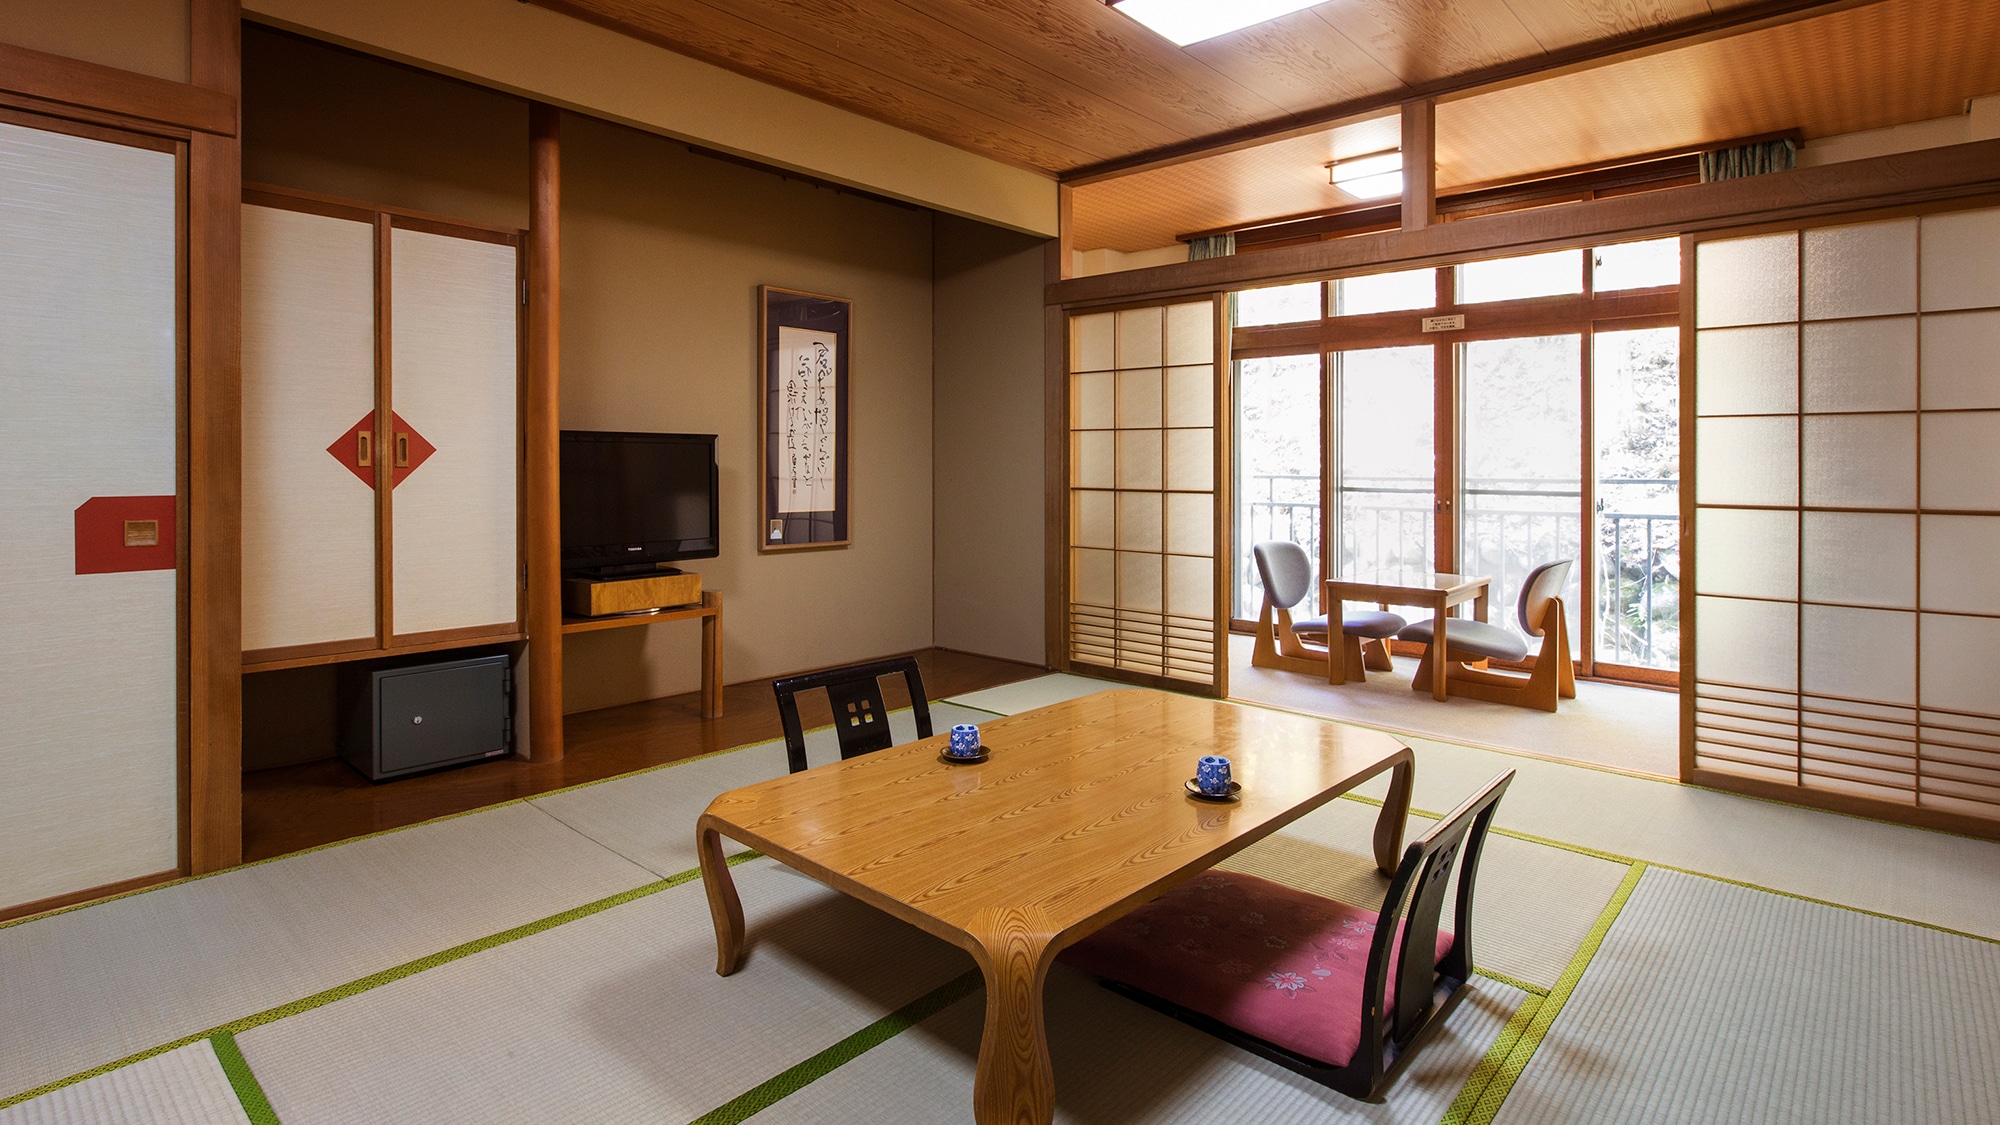 【일본식 방】기타유자와의 자연이 창문에 펼쳐지는 일본식 방은 12 다다미, 느긋하게 편히 쉴 수 있습니다.